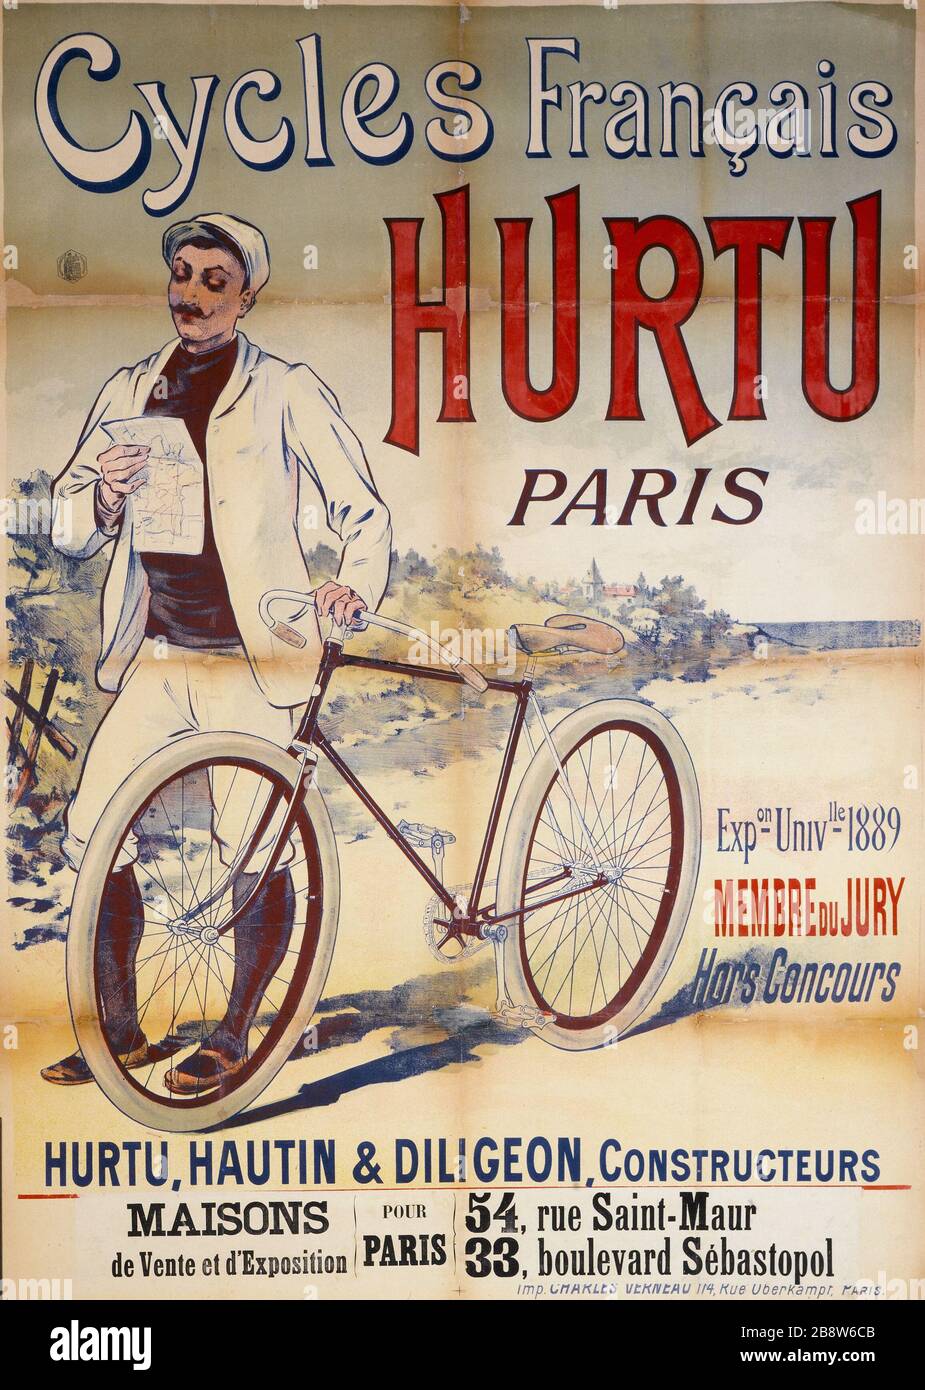 CYCLES FRENCH Hurtu, PARIS Eugène Ogé (1861-1936). Imprimerie Charles Verneau. Cycles Français Hurtu, Paris. Affiche. Lithographie couleur, vers 1892. Paris, musée Carnavalet. Stock Photo